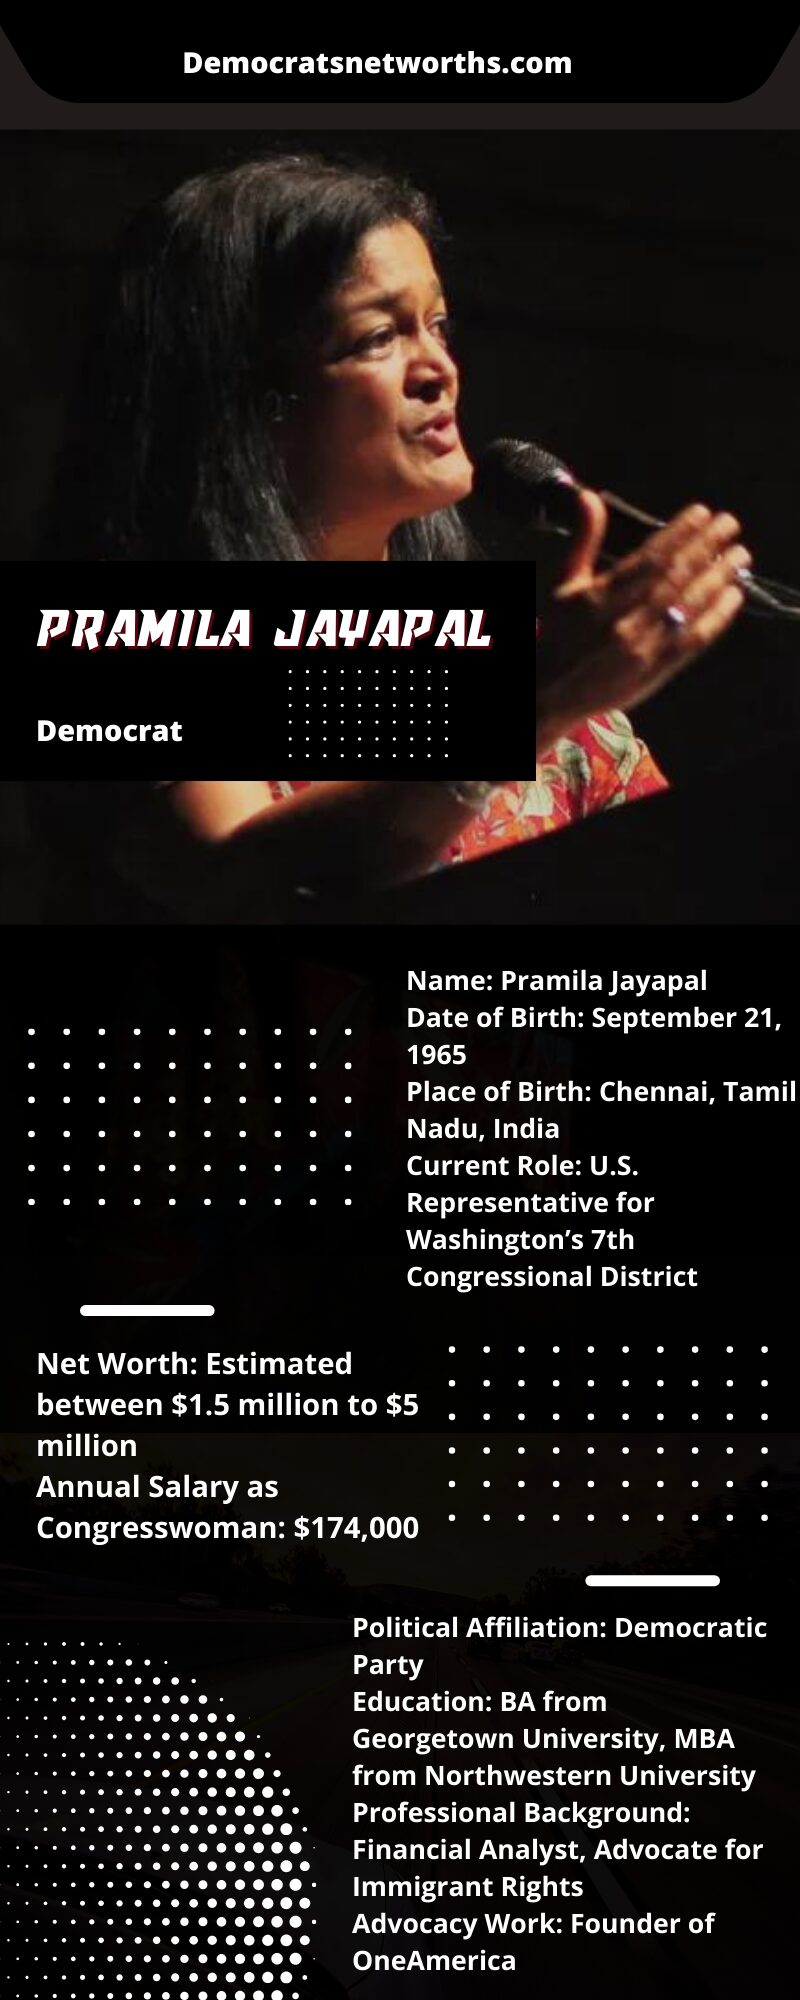 Pramila Jayapal's Net Worth